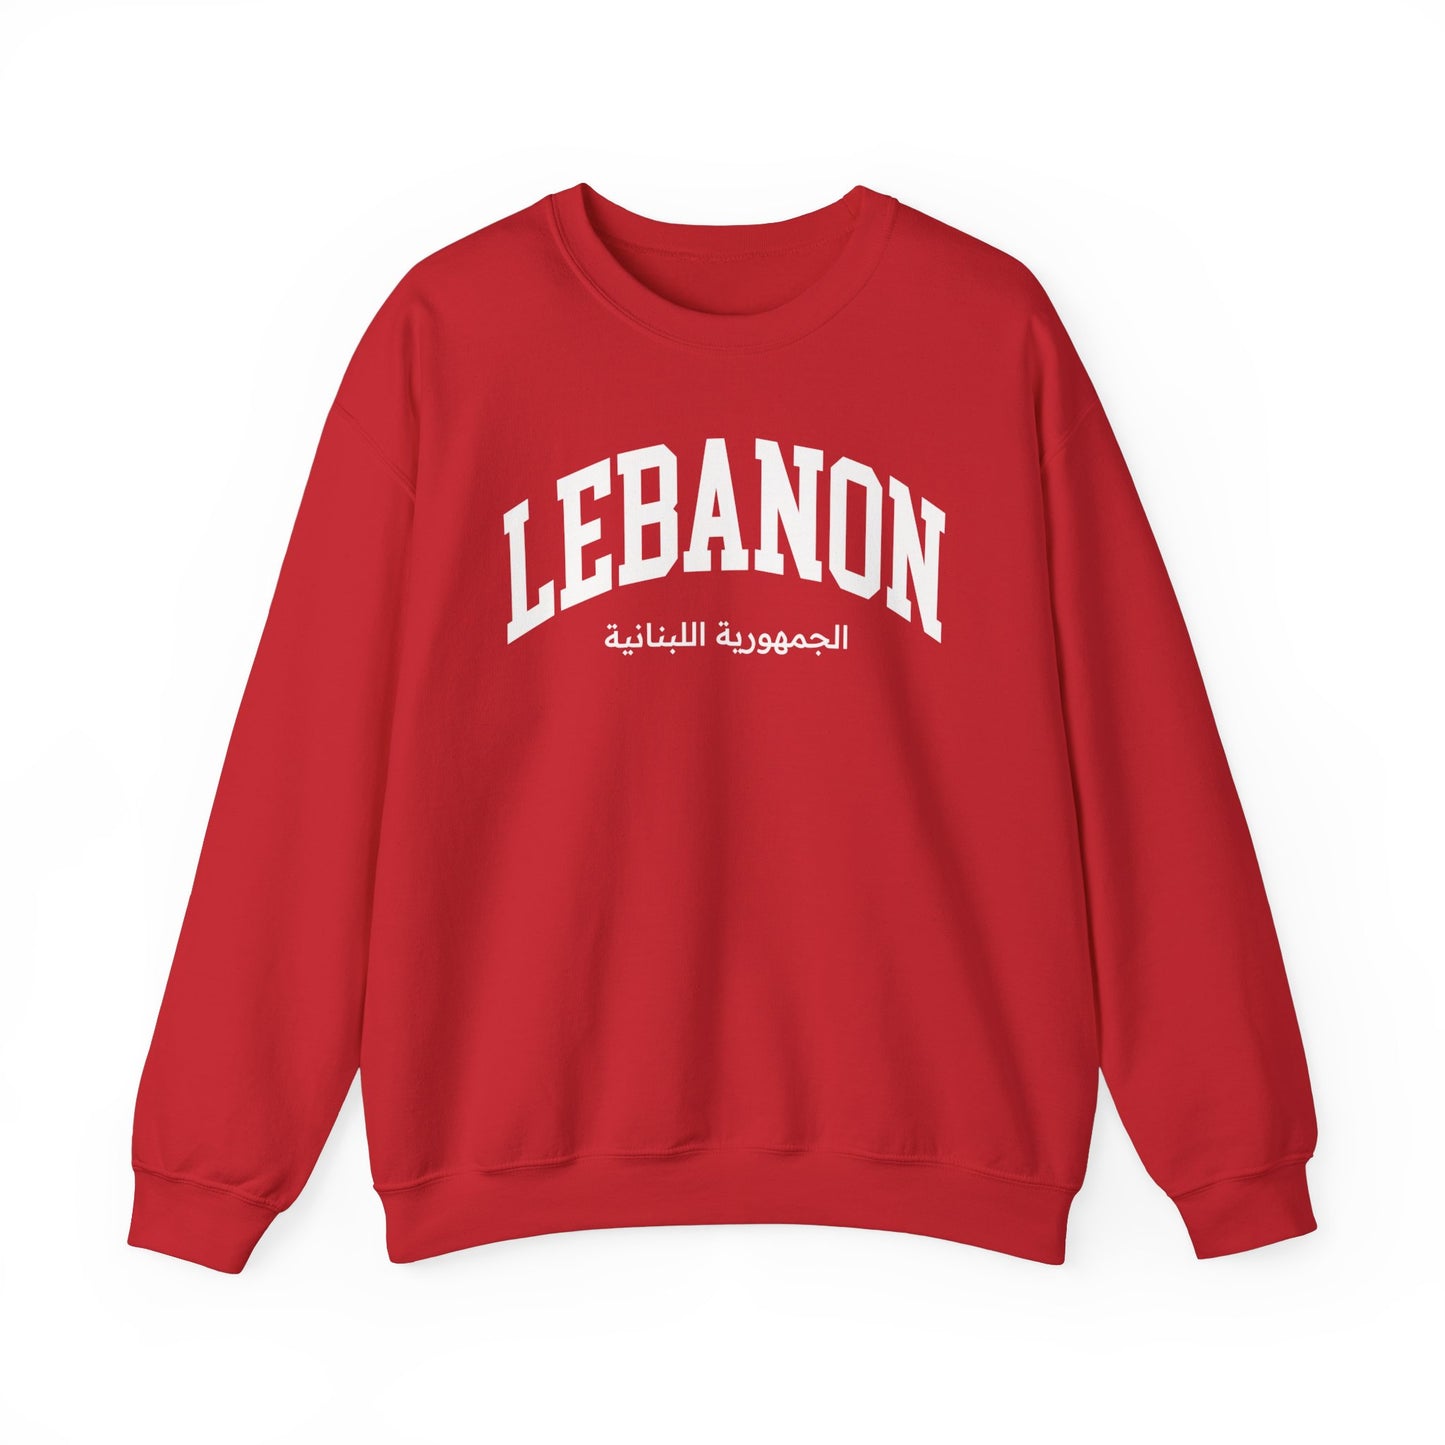 Lebanon Sweatshirt